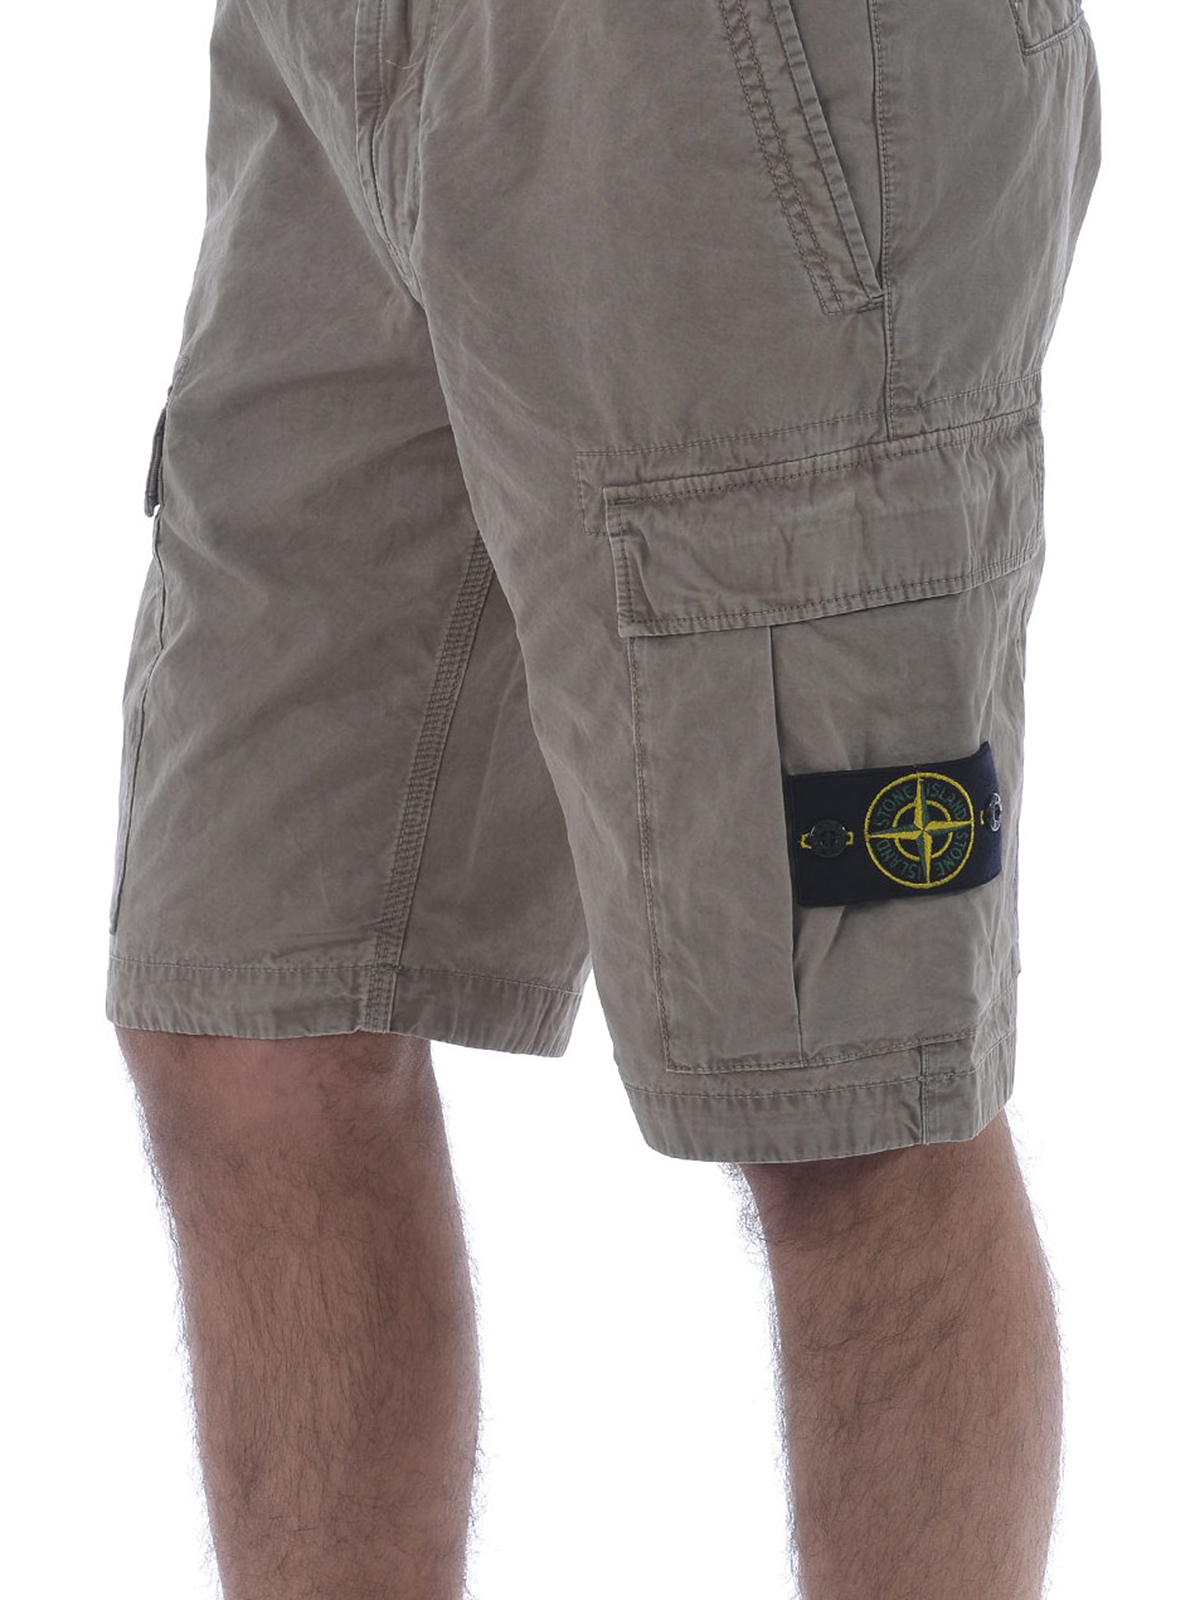 Trousers Shorts Stone Island - Taupe gabardine cargo short pants